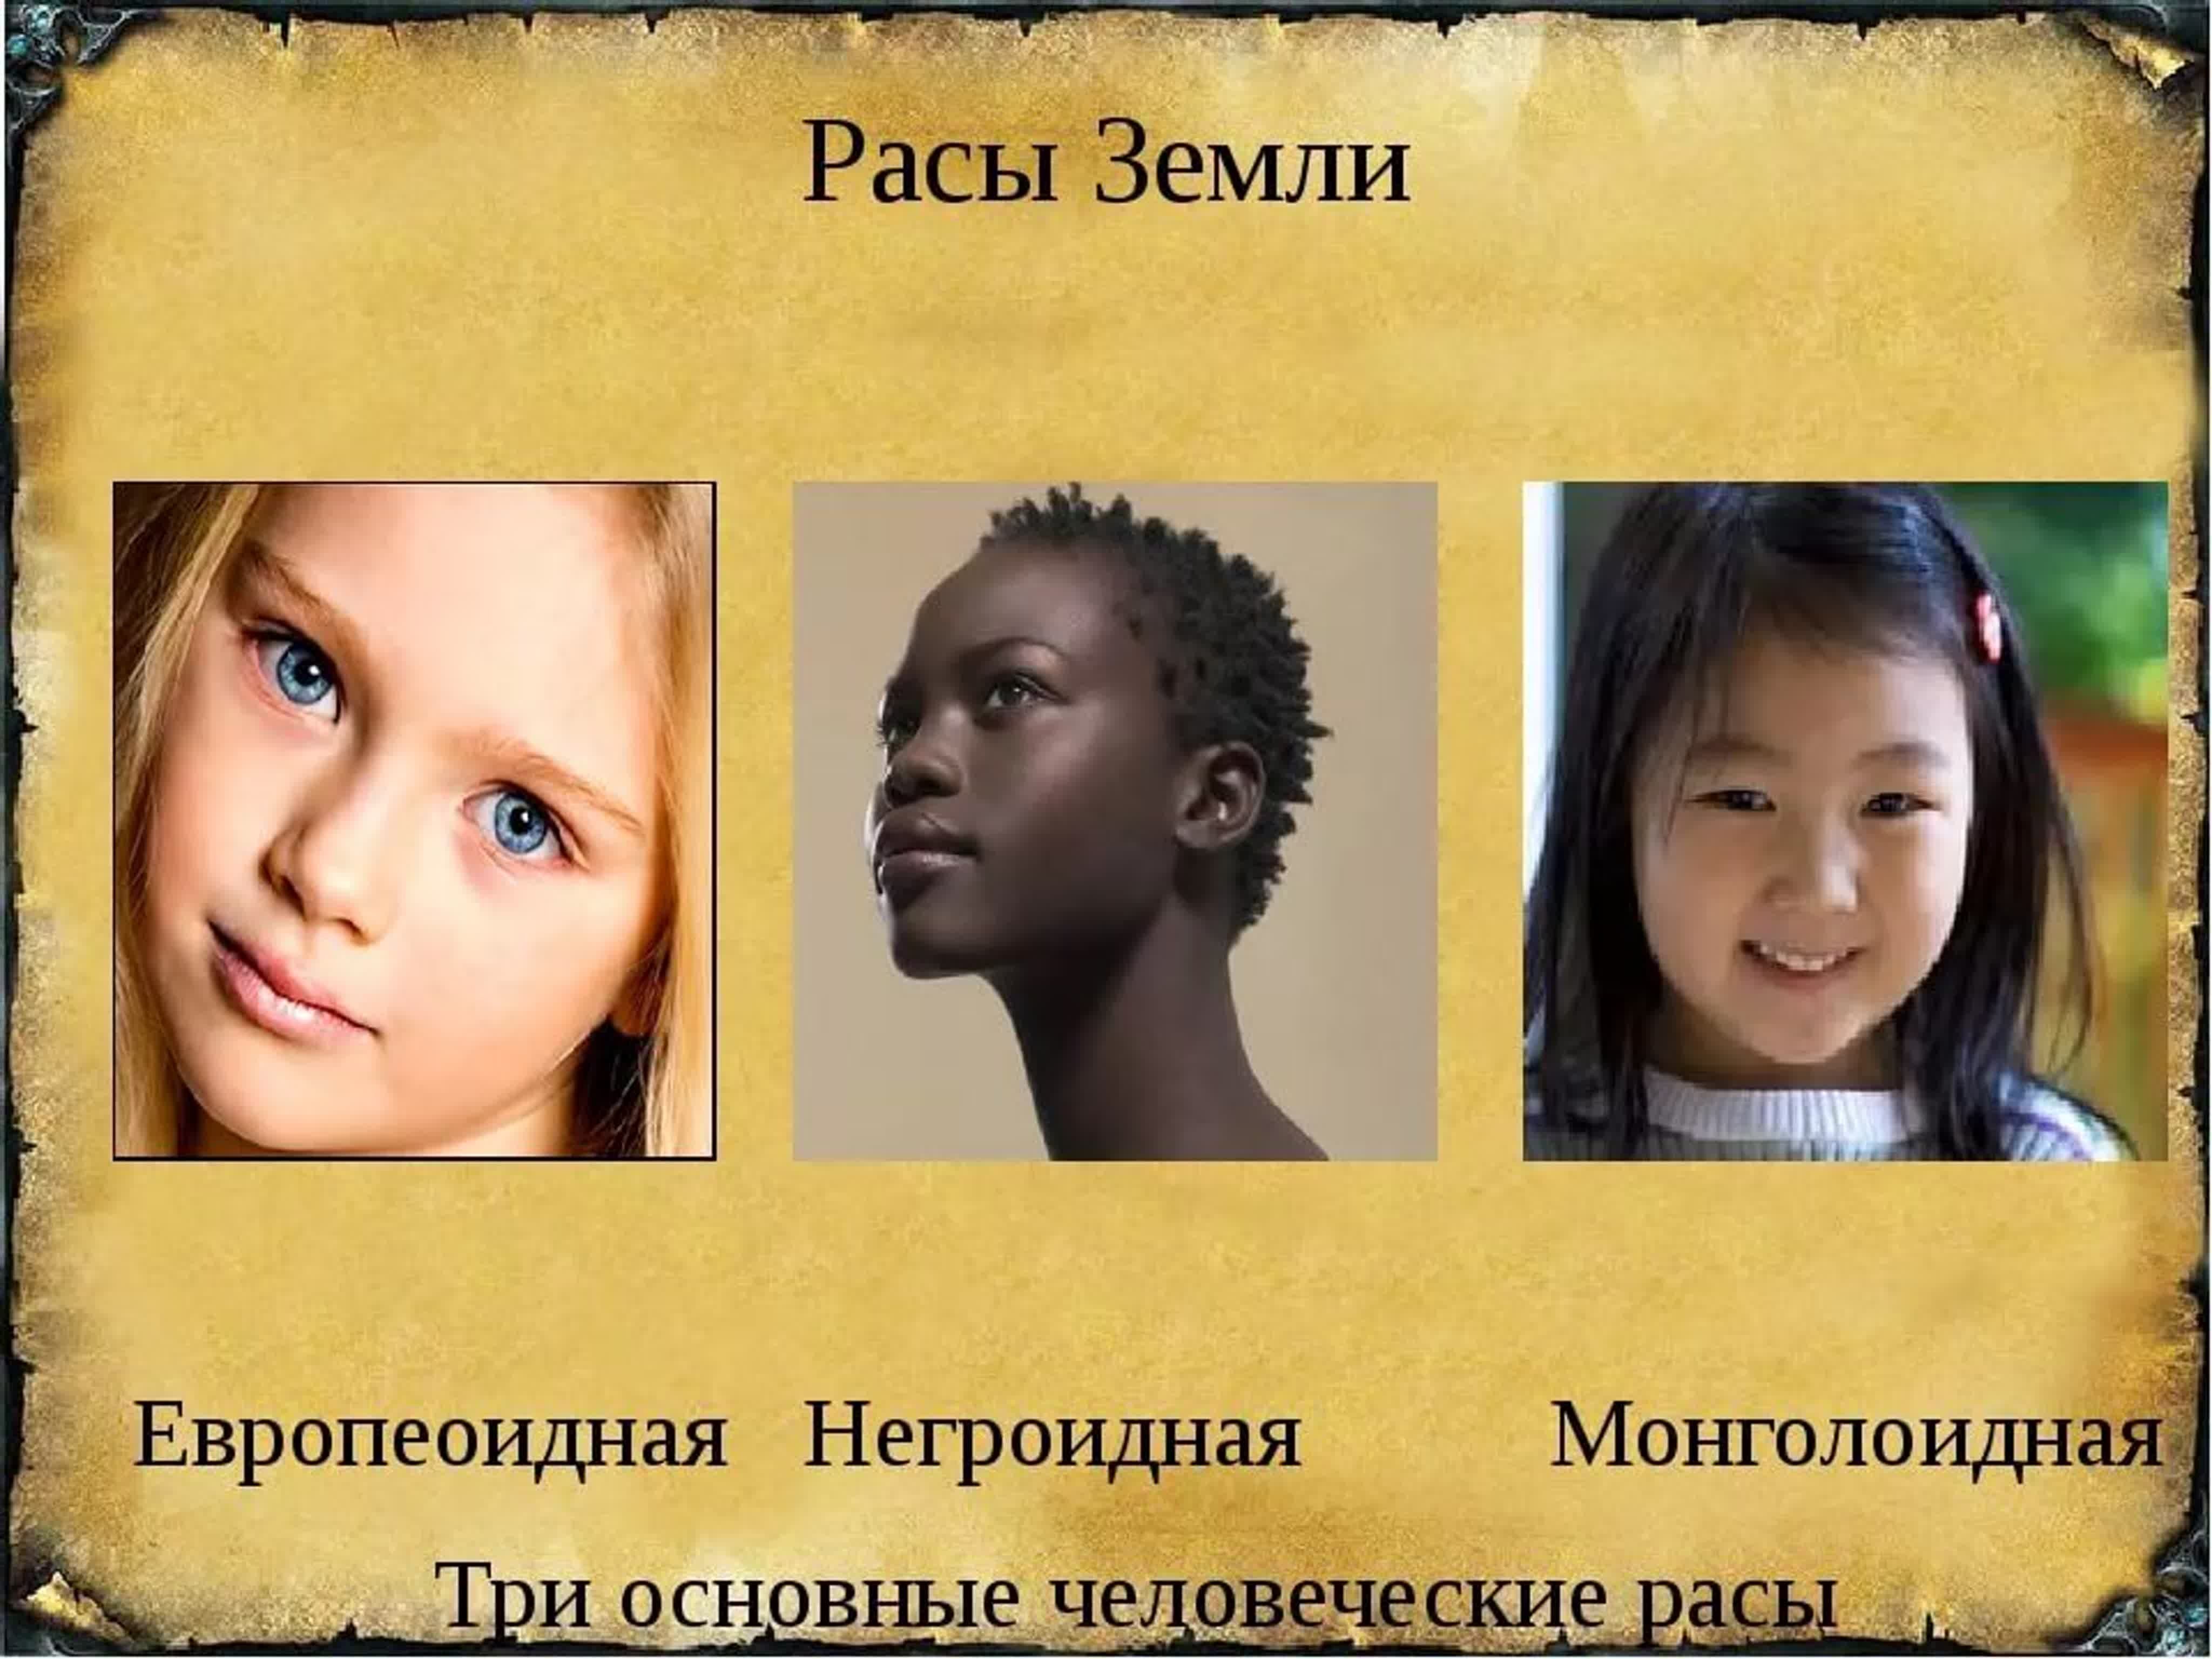 Расы человека количество. Расы людей европеоидная монголоидная негроидная. Три расы монголоидная, негроидная, европейская. Люди европеоидной и монголоидной расы. Современные расы.